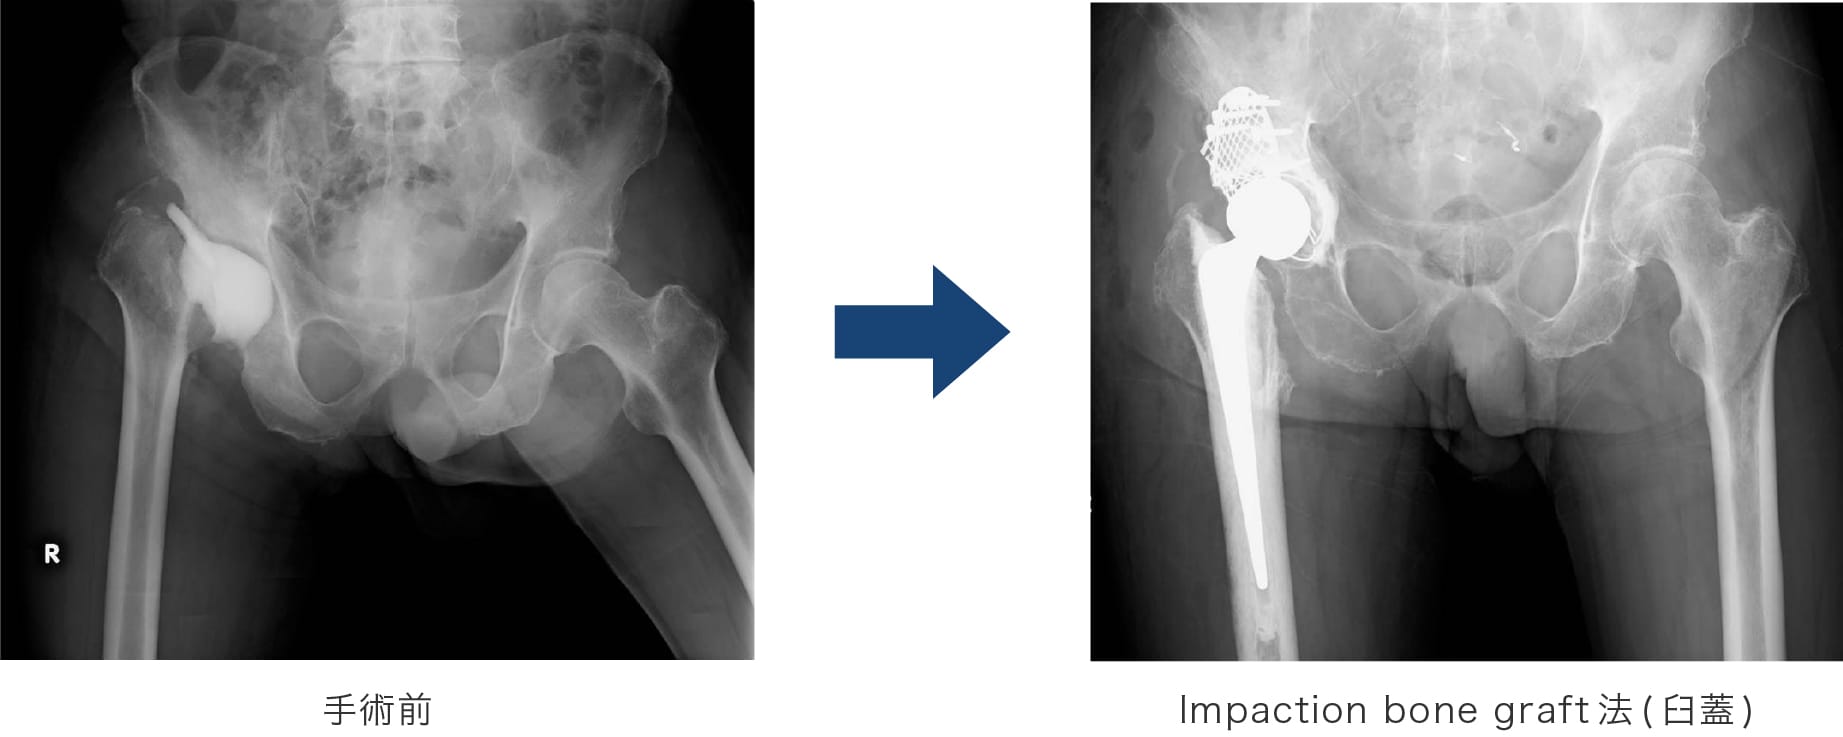 Impaction bone graft法(臼蓋)  手術前後